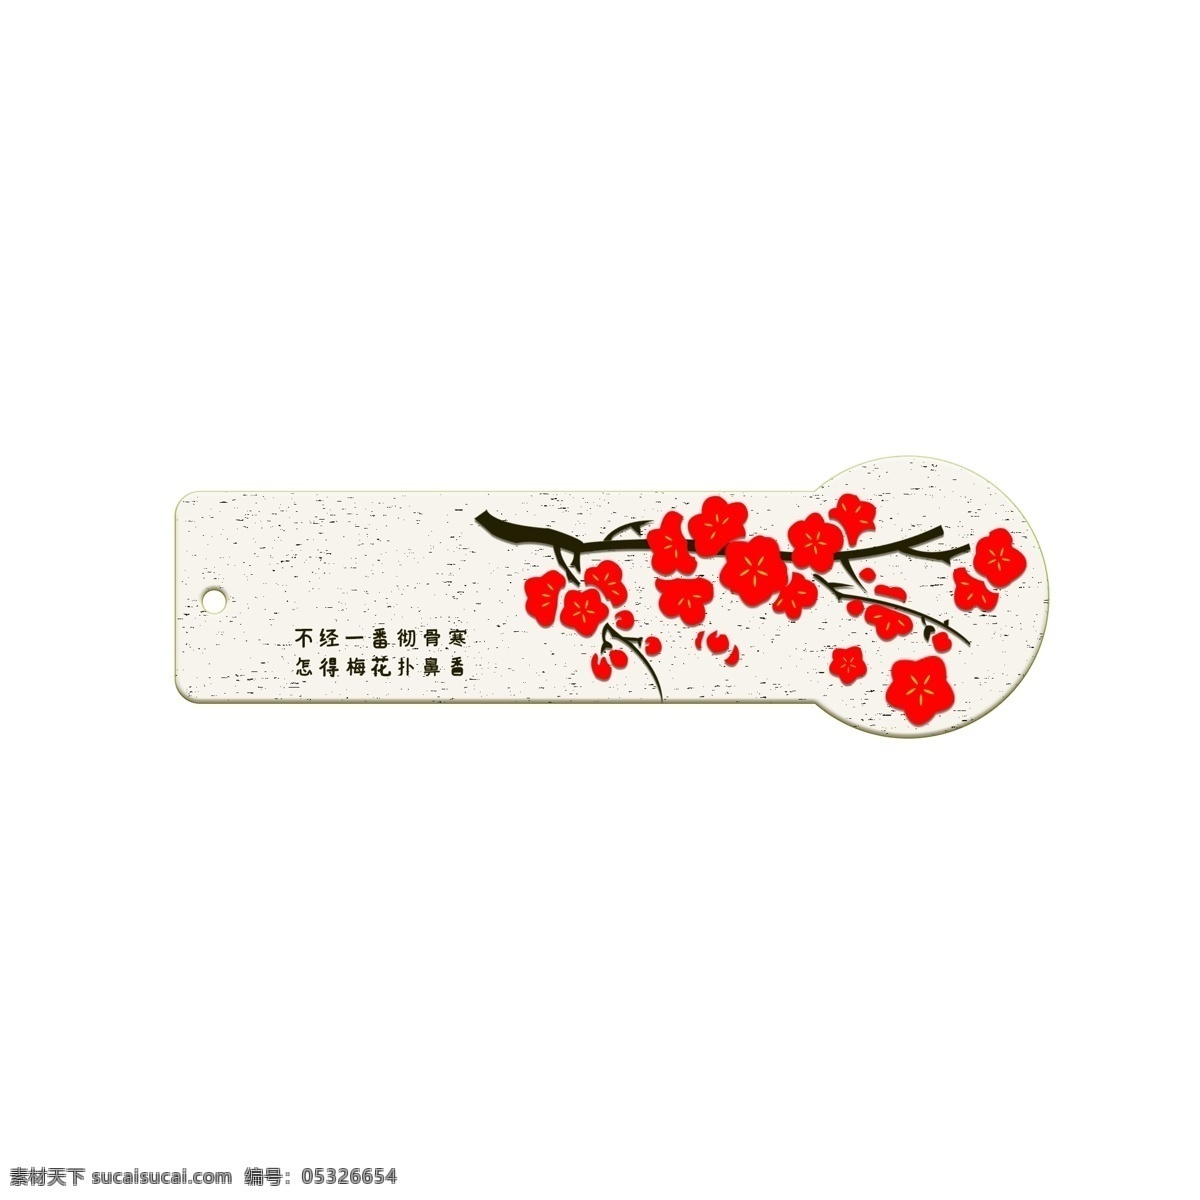 中国 风 梅花 书签 傲骨 风雪 中国风 红色梅花 红色 梅花树 中国代表的花 五瓣梅花 代表坚强的花